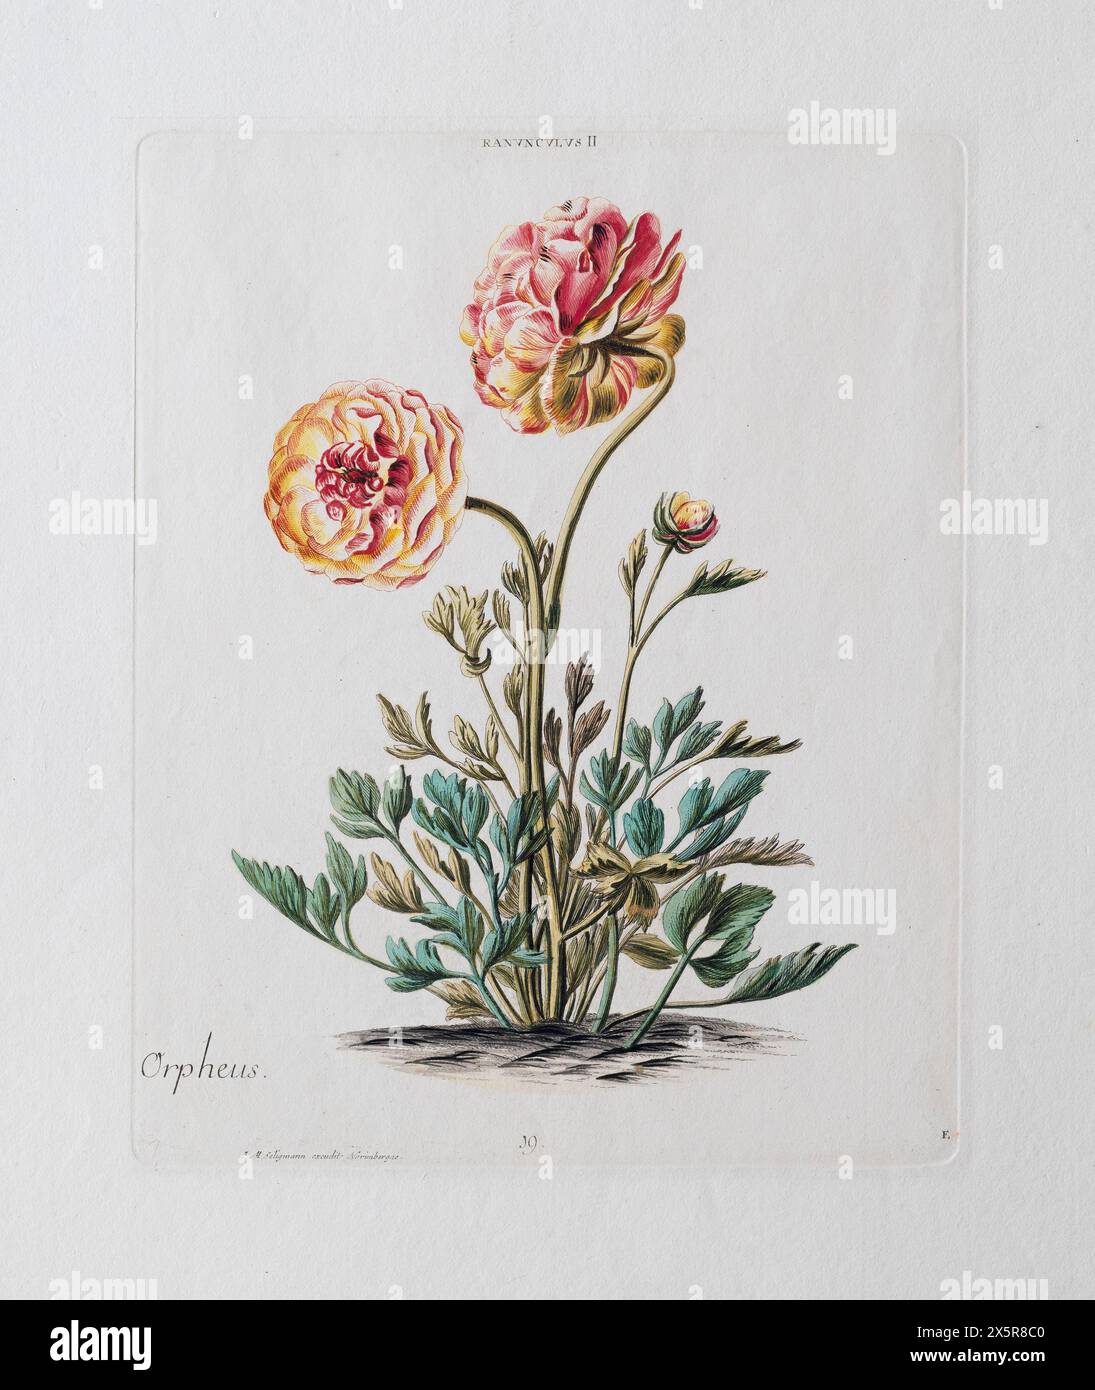 Orpheus Ranunculus ou Buttercup persane (Ranunculus asiaticus), gravure sur cuivre de couleur ancienne par J. M. Seligmann de l'Hortus Nitidissimis Banque D'Images